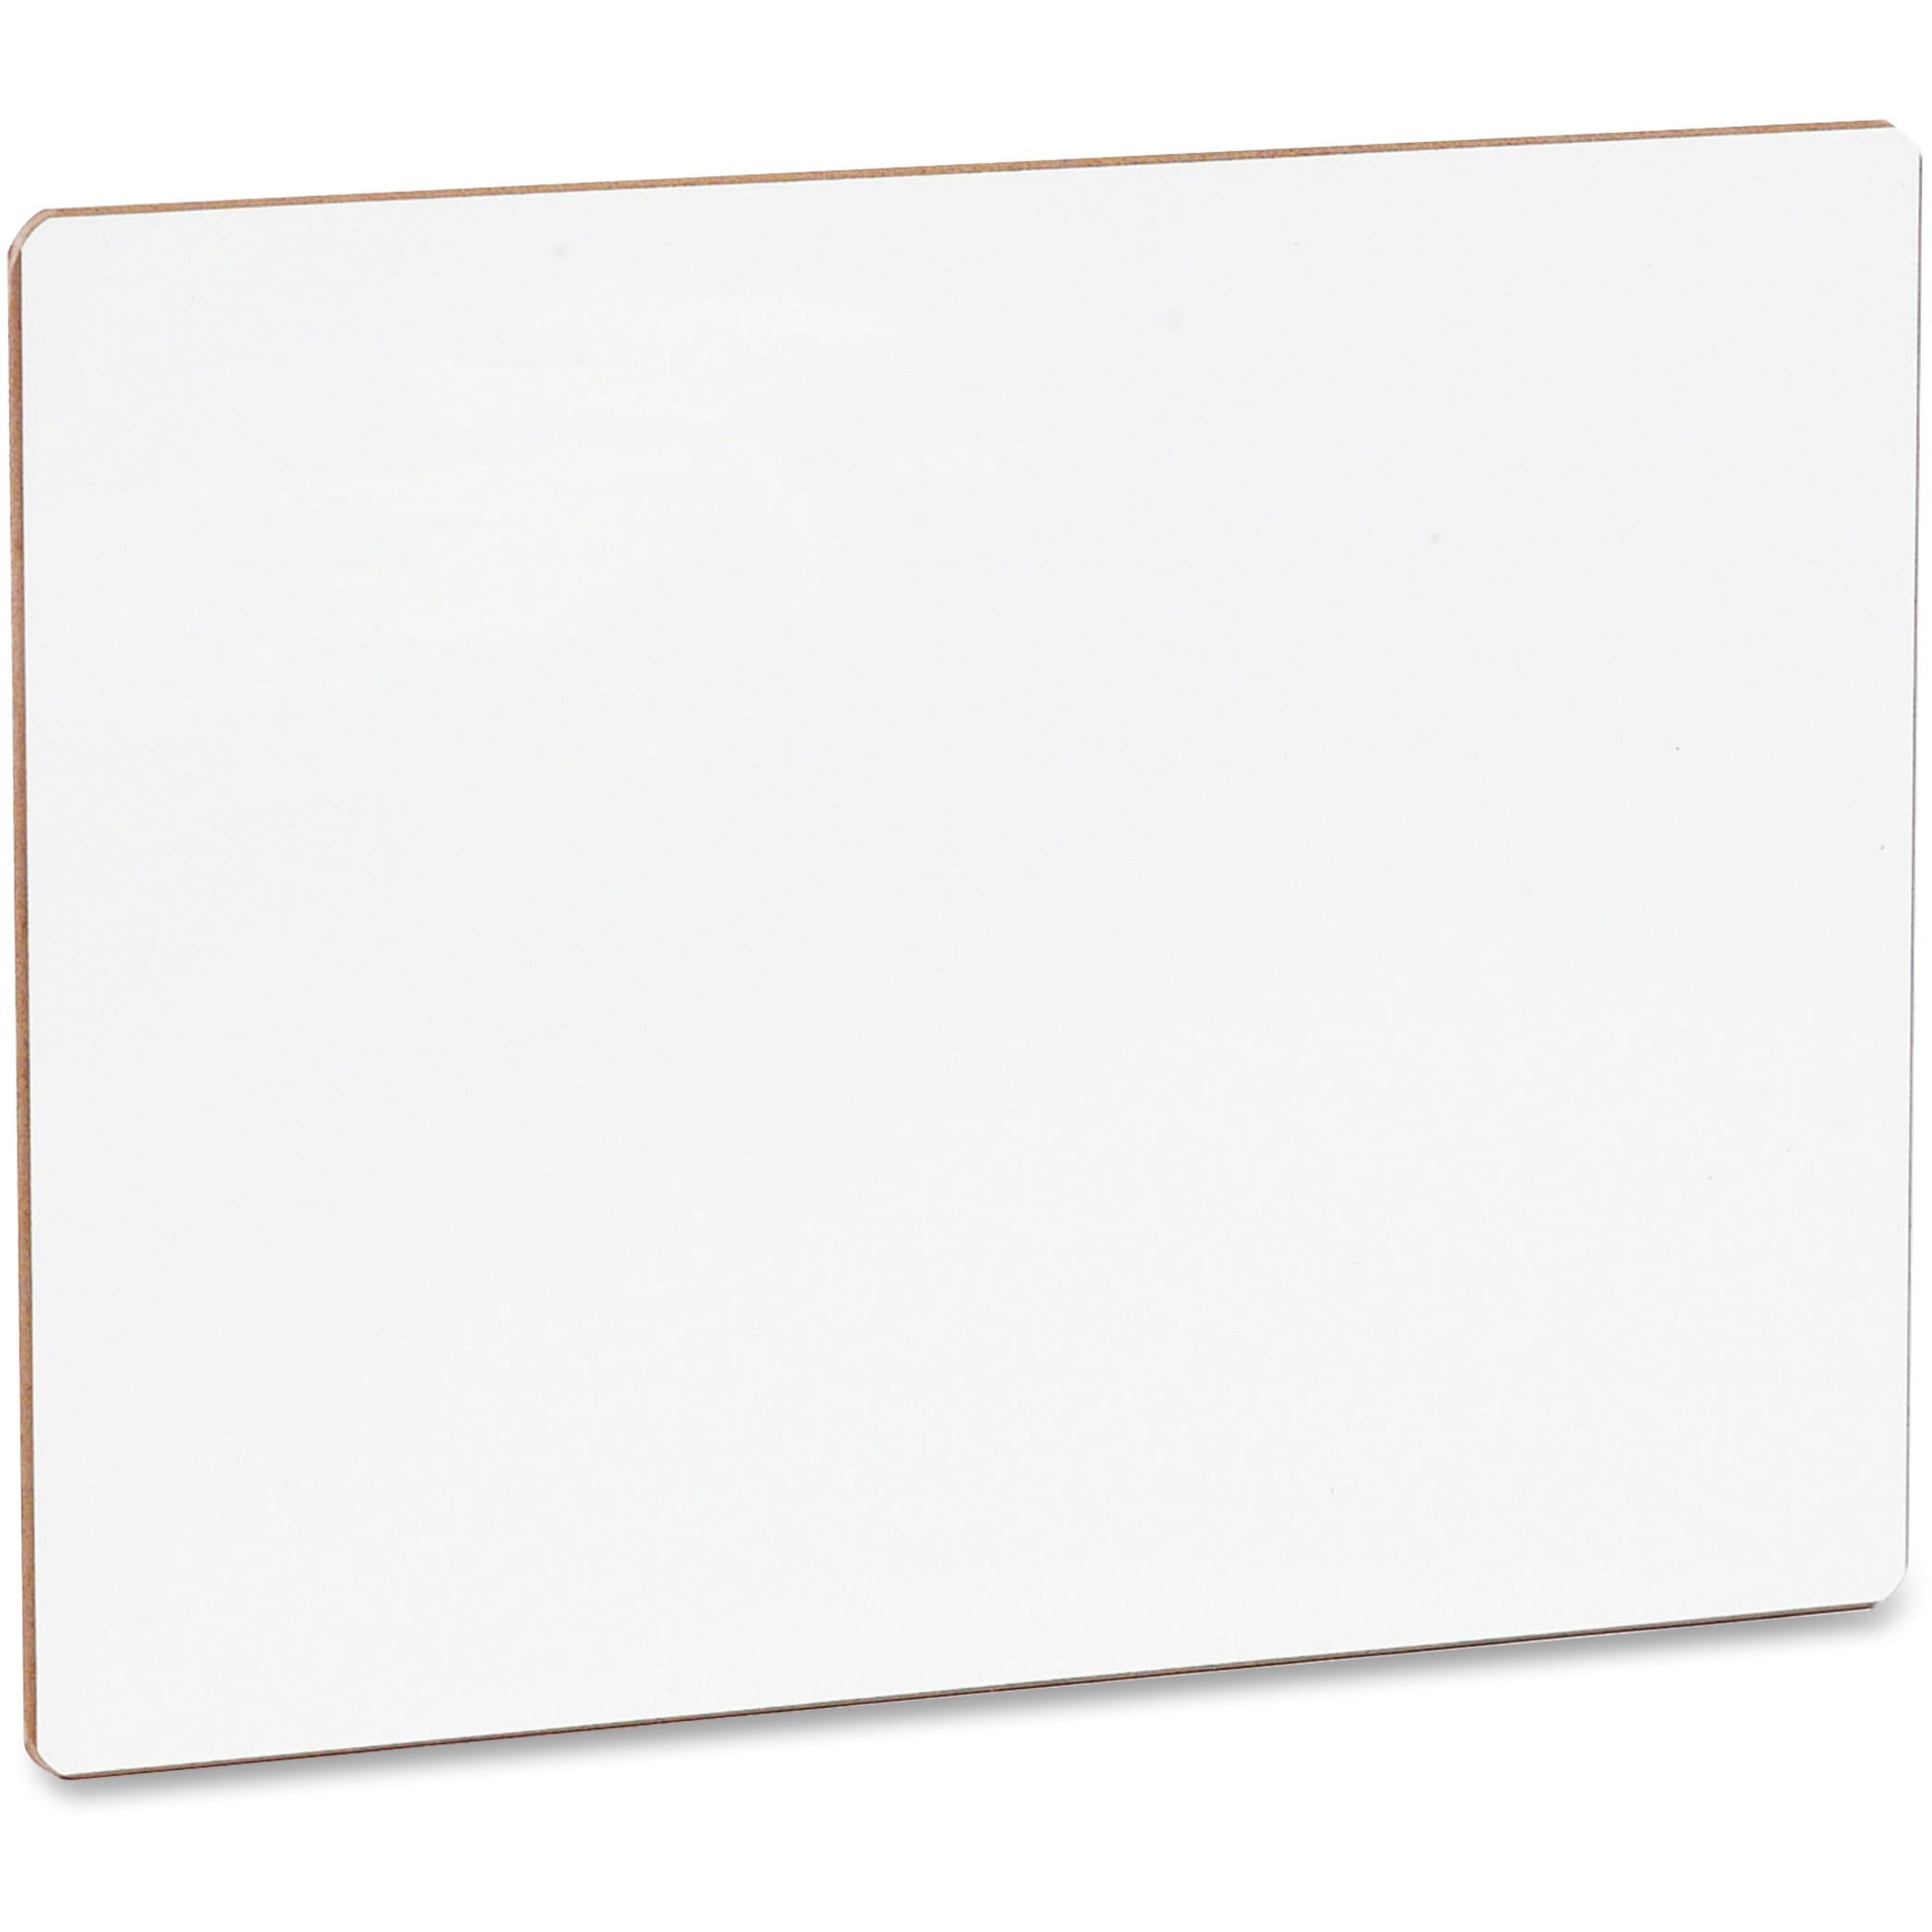 Dry Erase White Board 9X13 Wipe Off Lap Board Blank Dry Erase Board